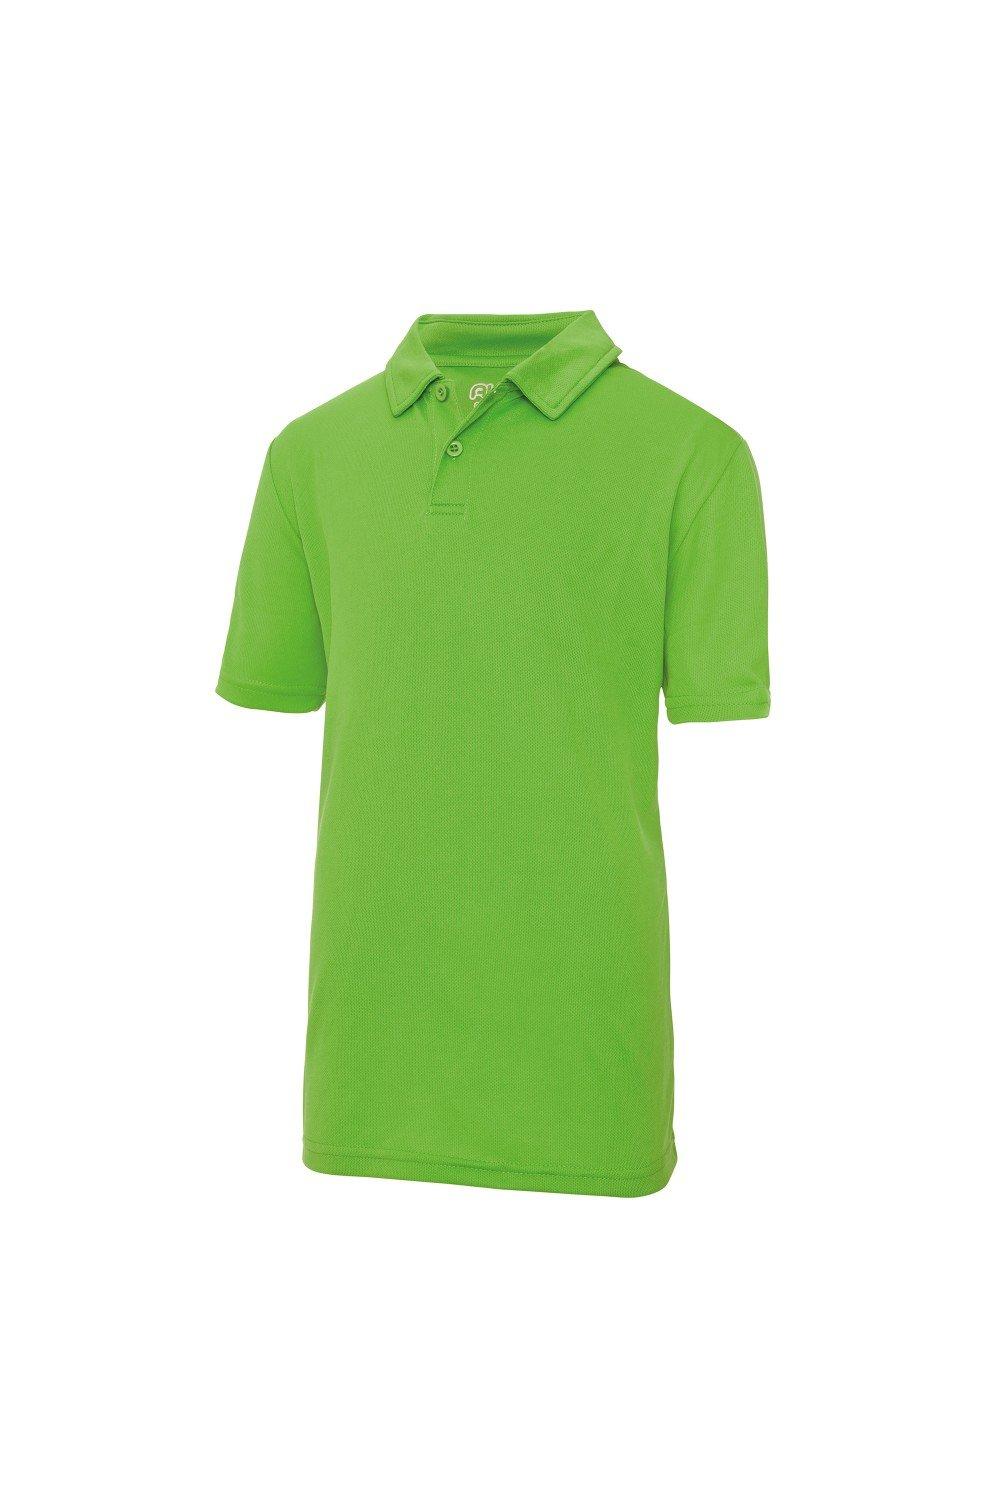 Спортивная однотонная рубашка-поло (2 шт.) Just Cool, зеленый